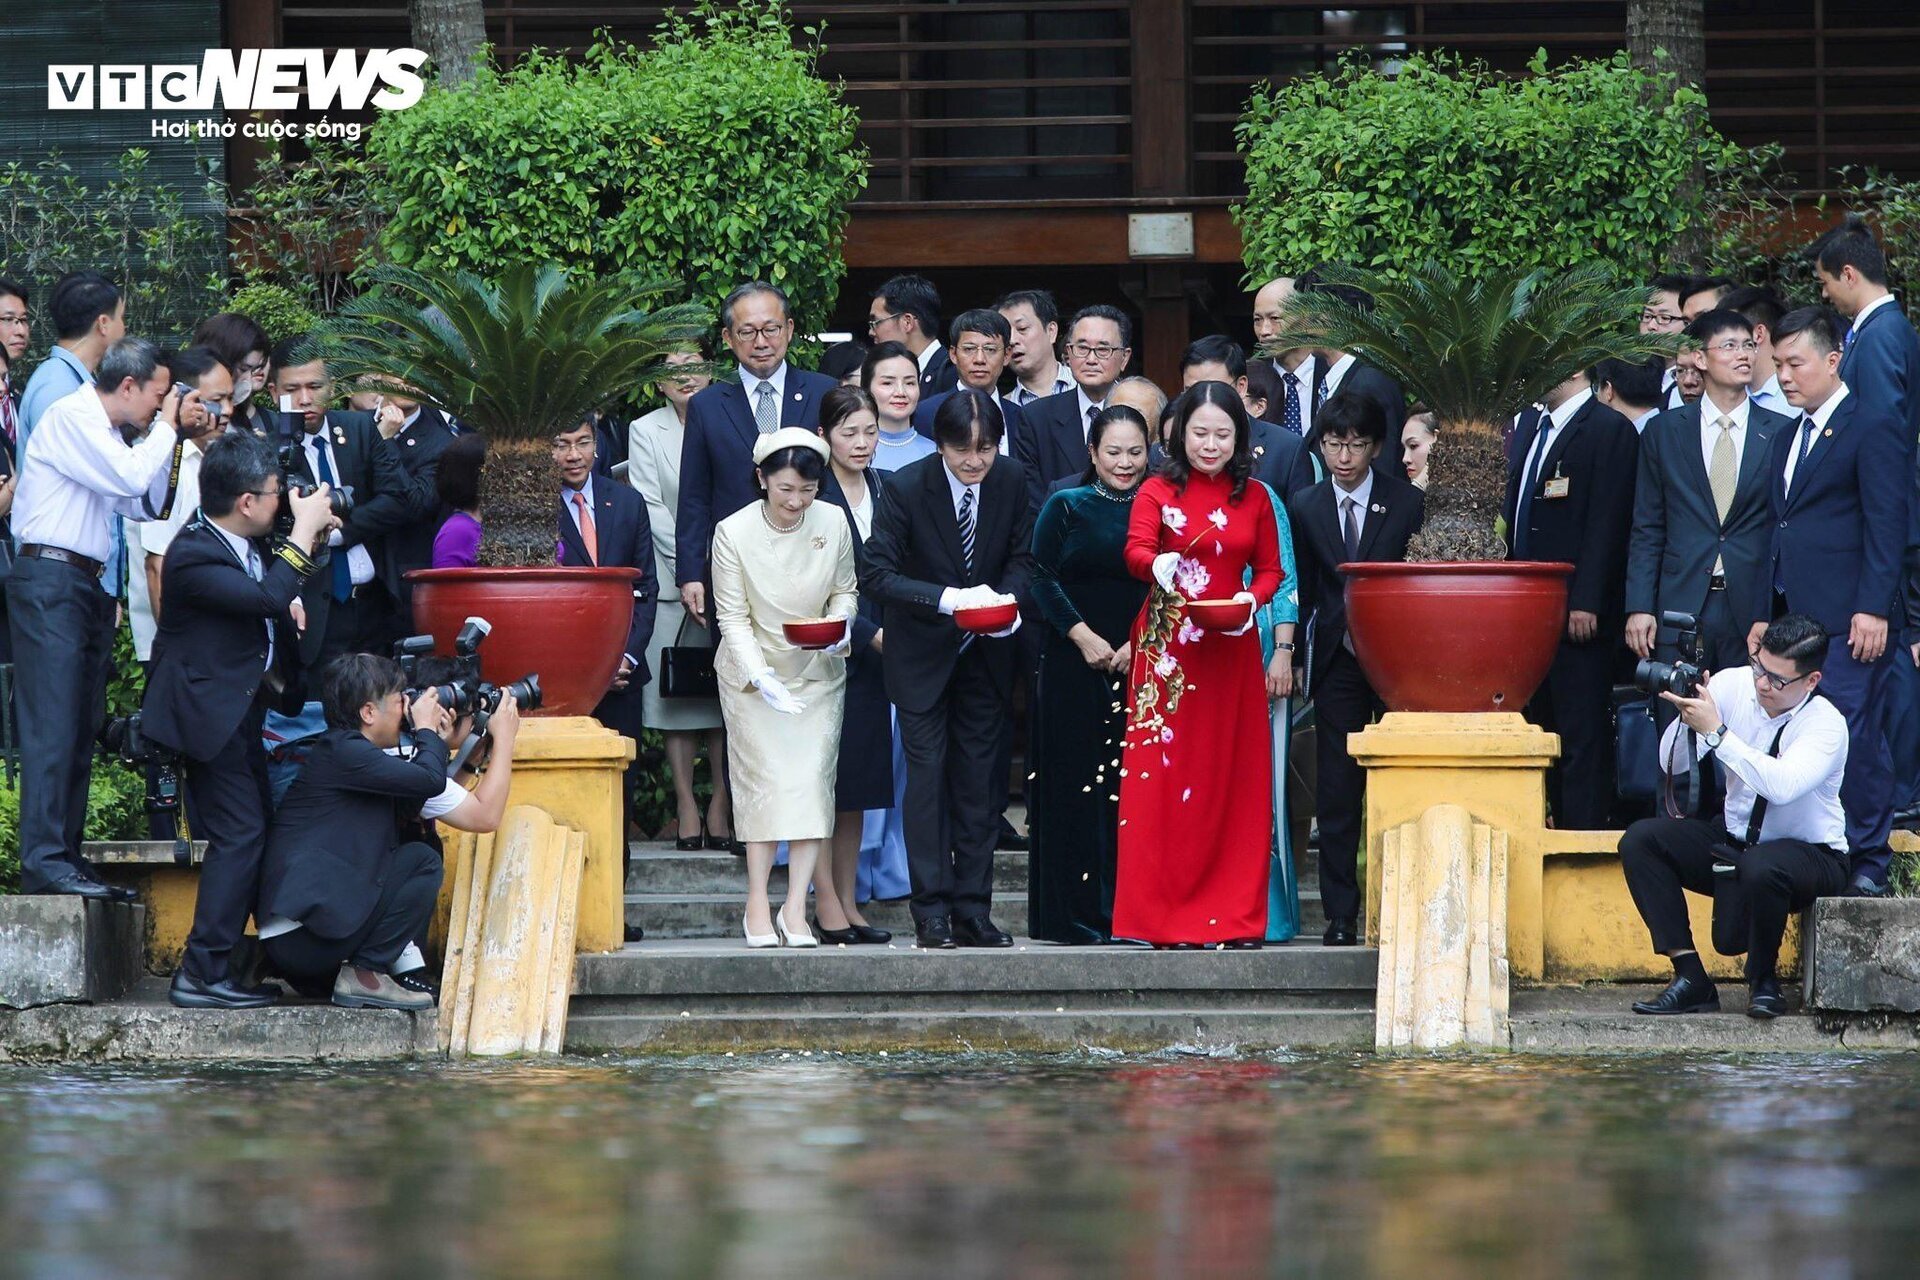 Hoàng Thái tử Nhật Bản và Công nương thăm di tích nhà sàn Bác Hồ, cho cá ăn - Ảnh 4.